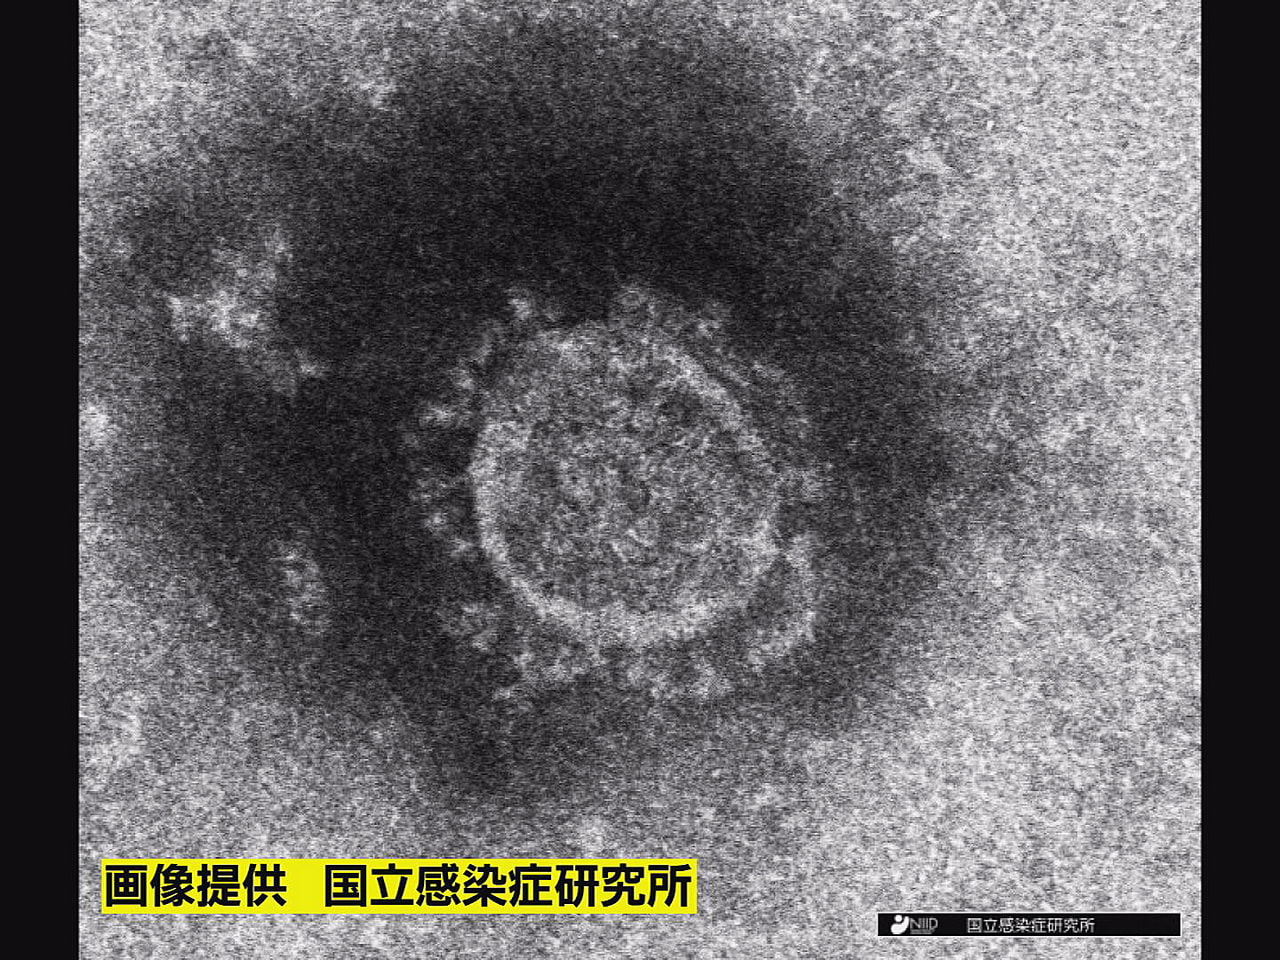 岐阜県は１４日、新型コロナウイルスの感染者が新たに２４８人確認されたと発表しまし...